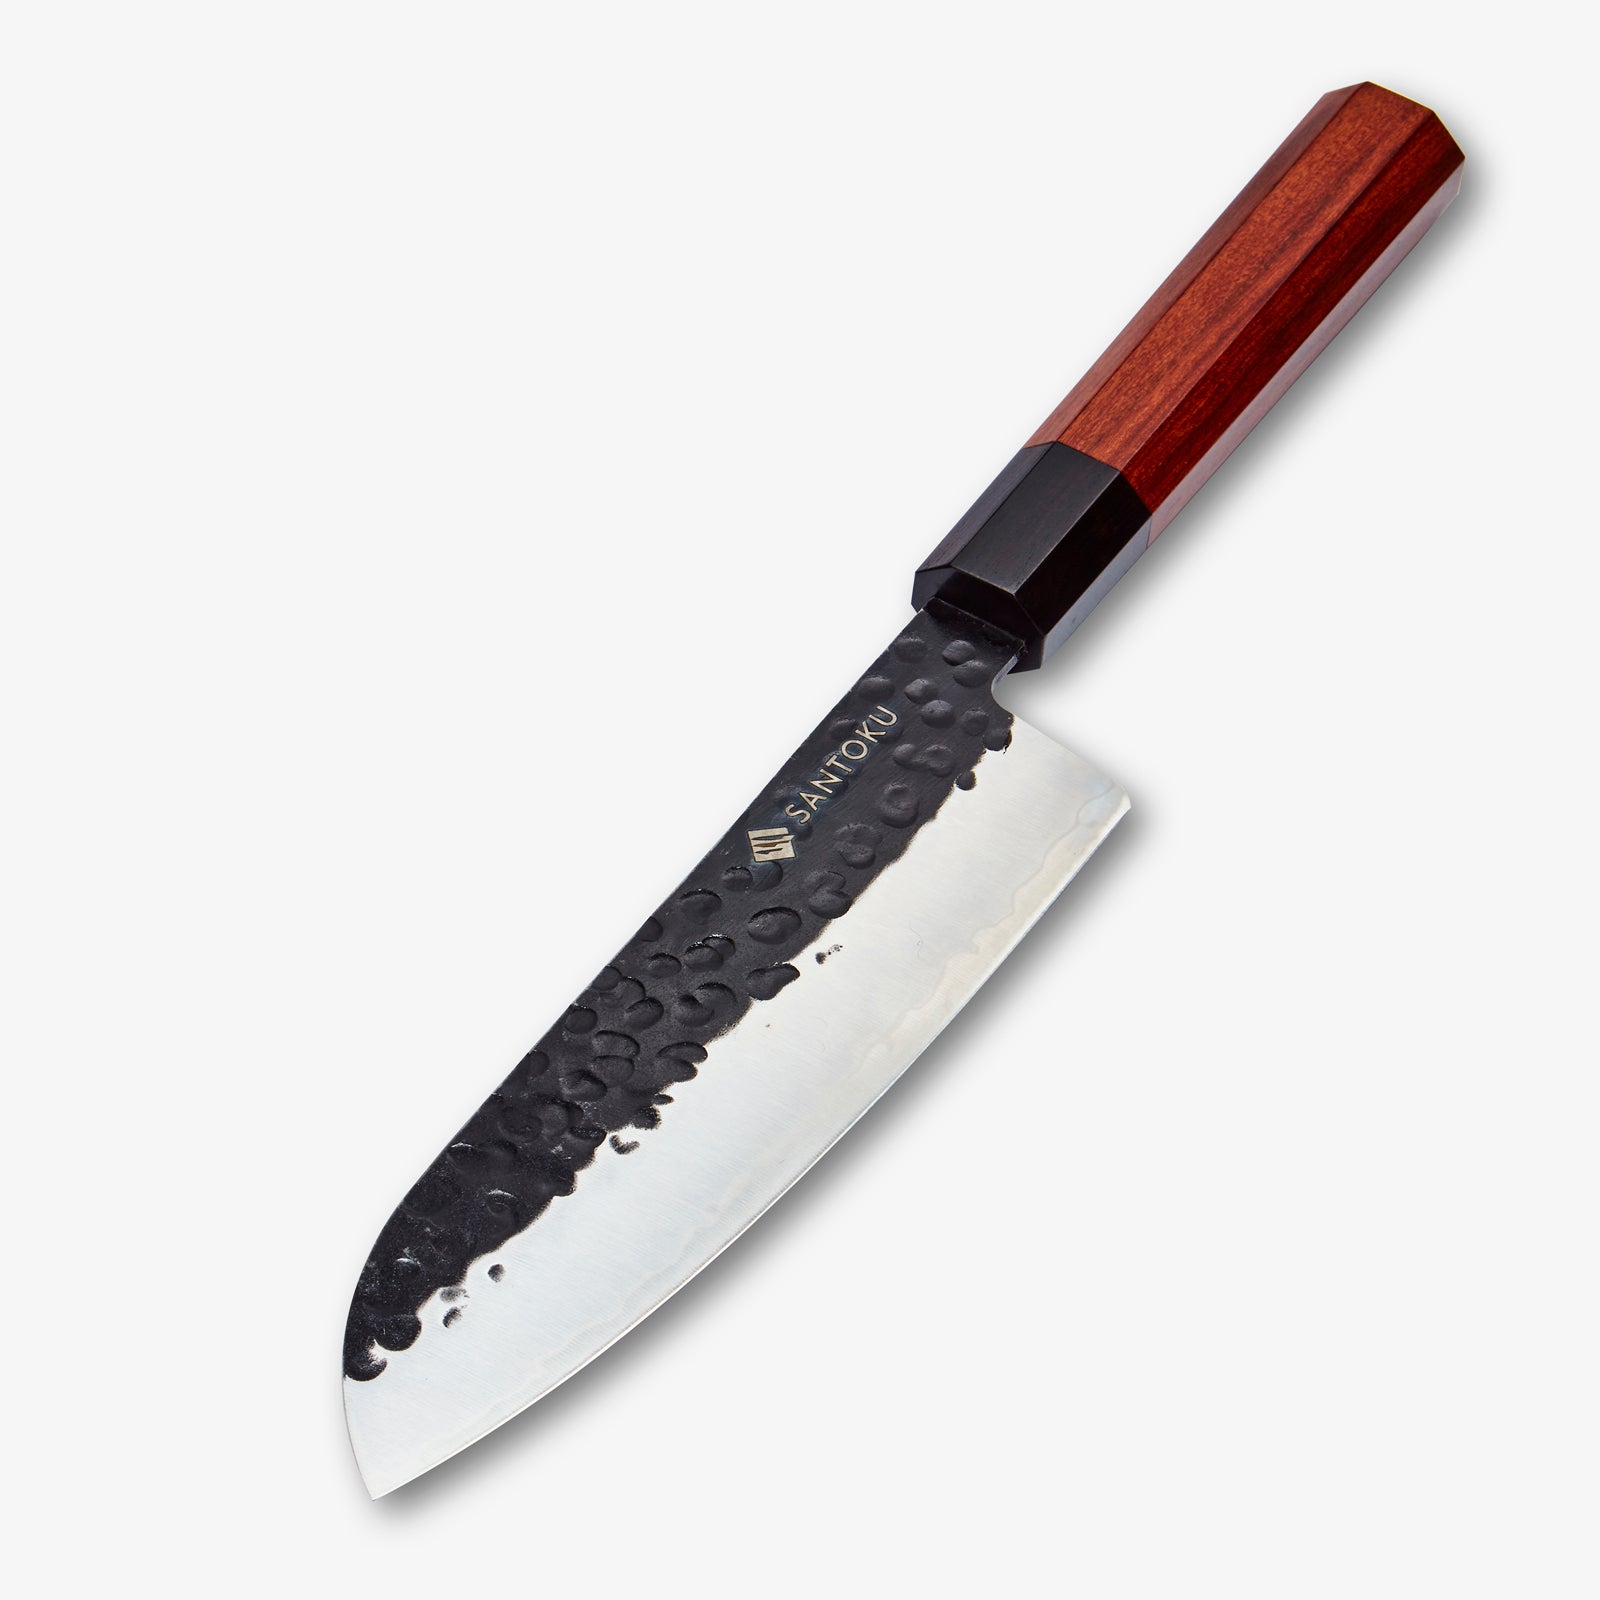 مجموعة سكاكين ميناتو مكونة من 5 قطع